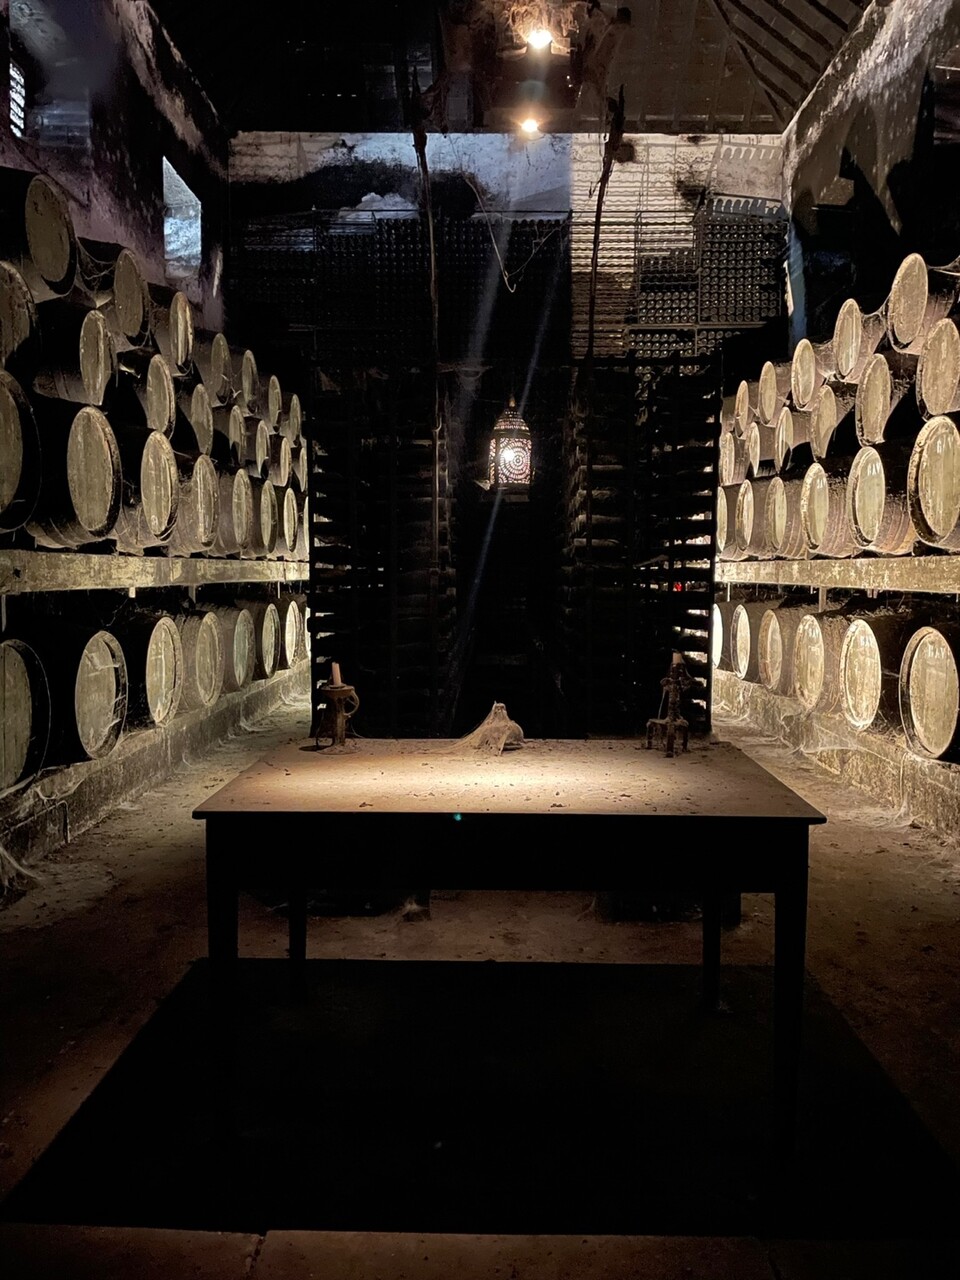 역사 만큼 많은 용량의 빈티지 와인들이 보관되어 있다. ⒸJose Maria da Fonseca